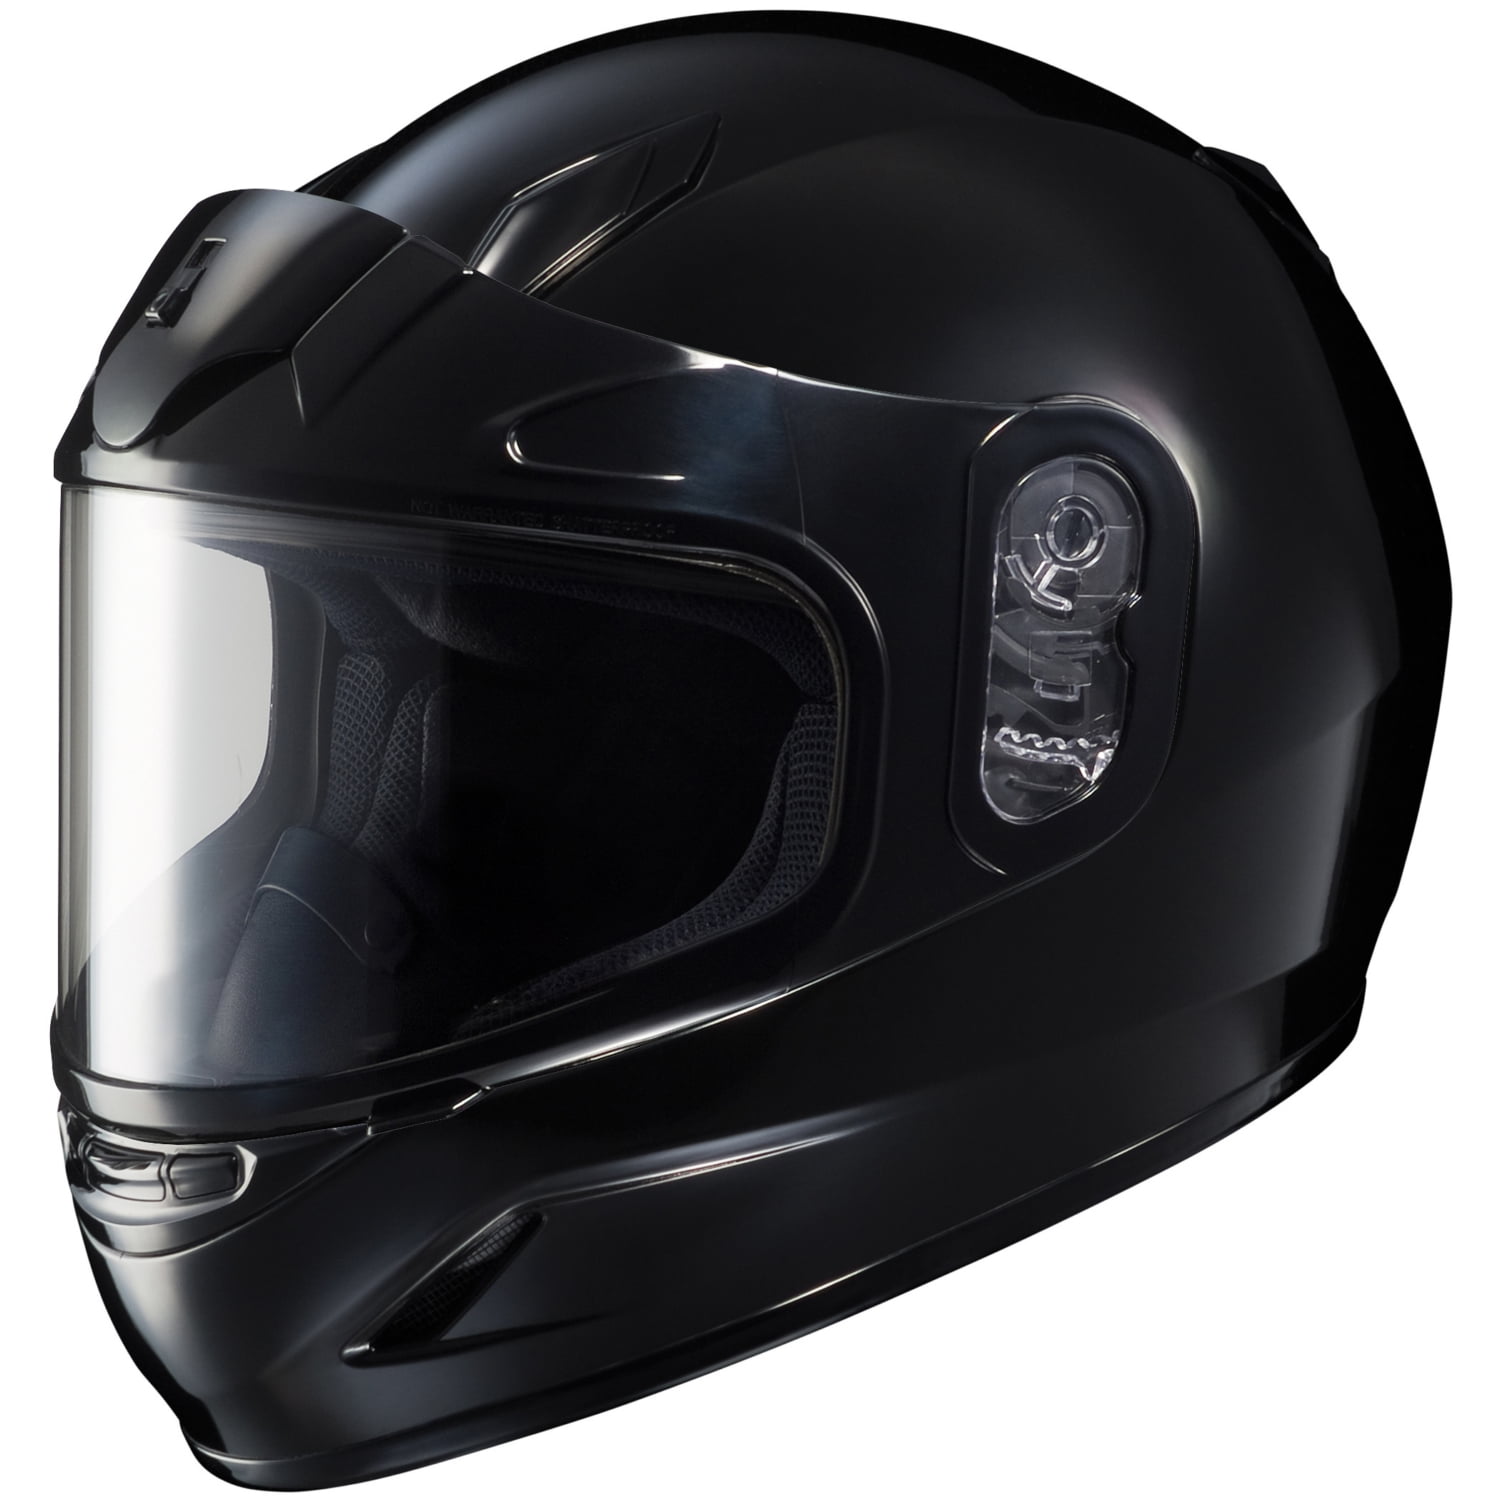 HJC IS-33 II Apus 3/4-Shell Open-Face Street Motorcycle Helmet SF Black/Gold 